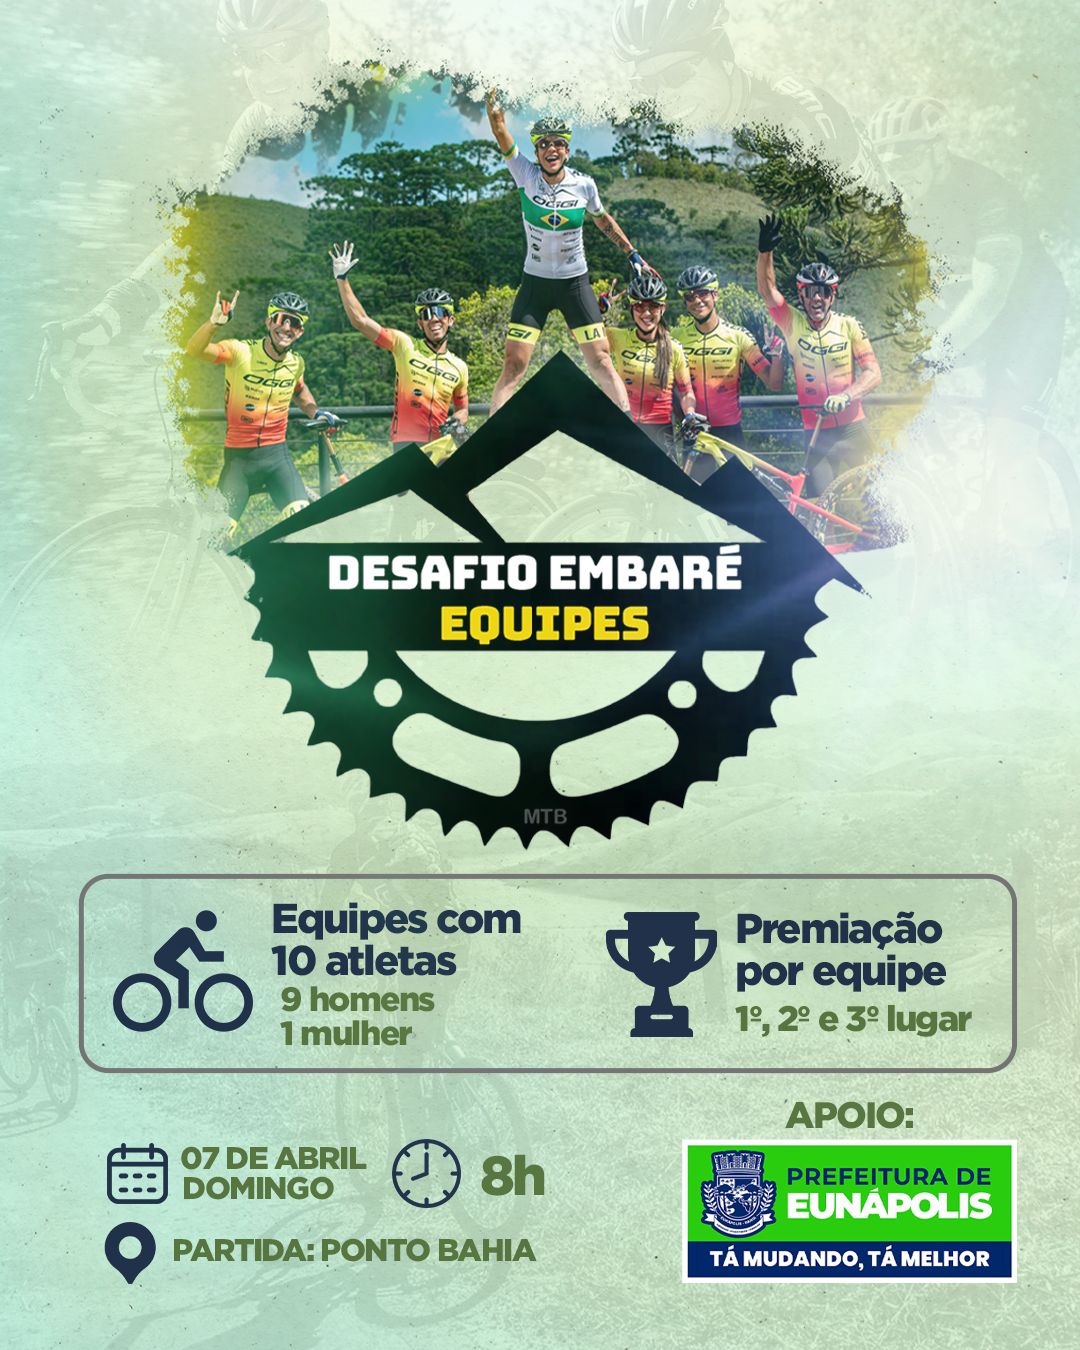 Em alusão ao Dia Mundial da Saúde, Prefeitura de Eunápolis apoia o Desafio Embaré de ciclismo que ocorre neste domingo 5